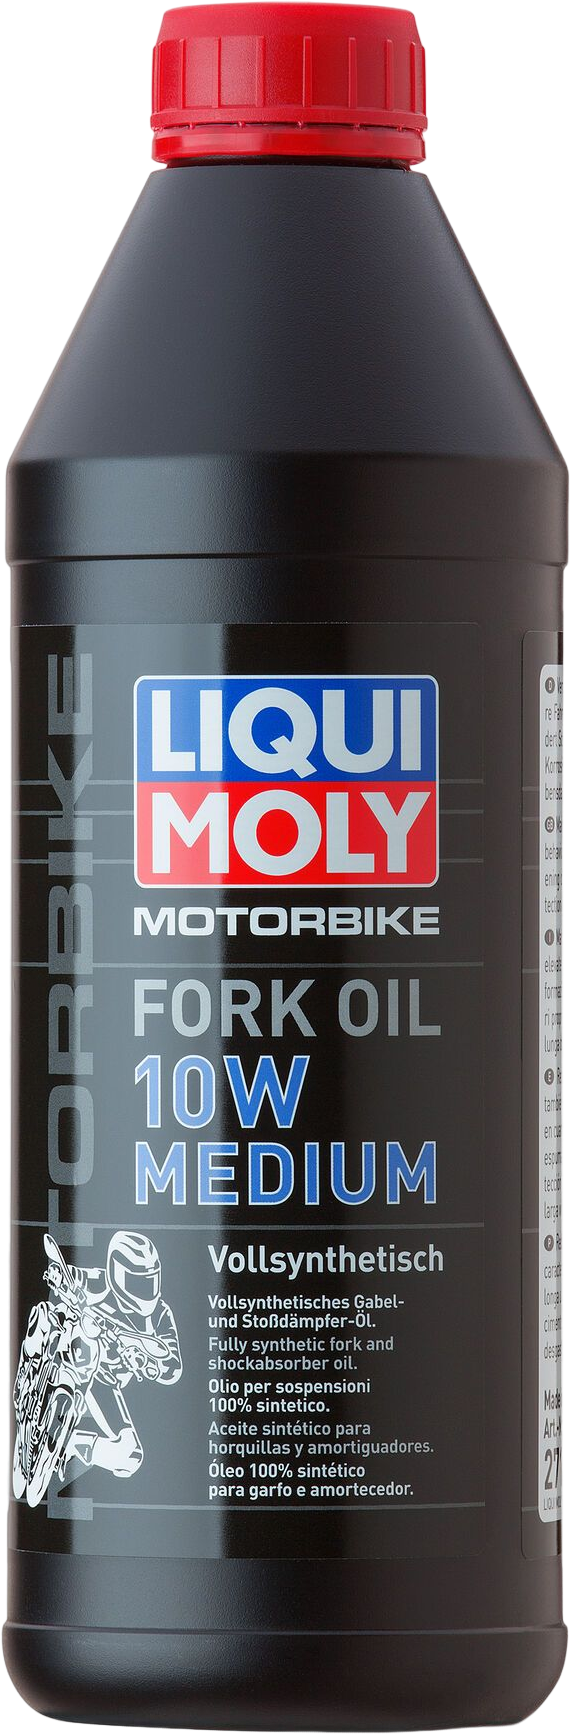 Liqui Moly Motorbike Fork Oil 10W medium, 6 x 1 lt detail 2